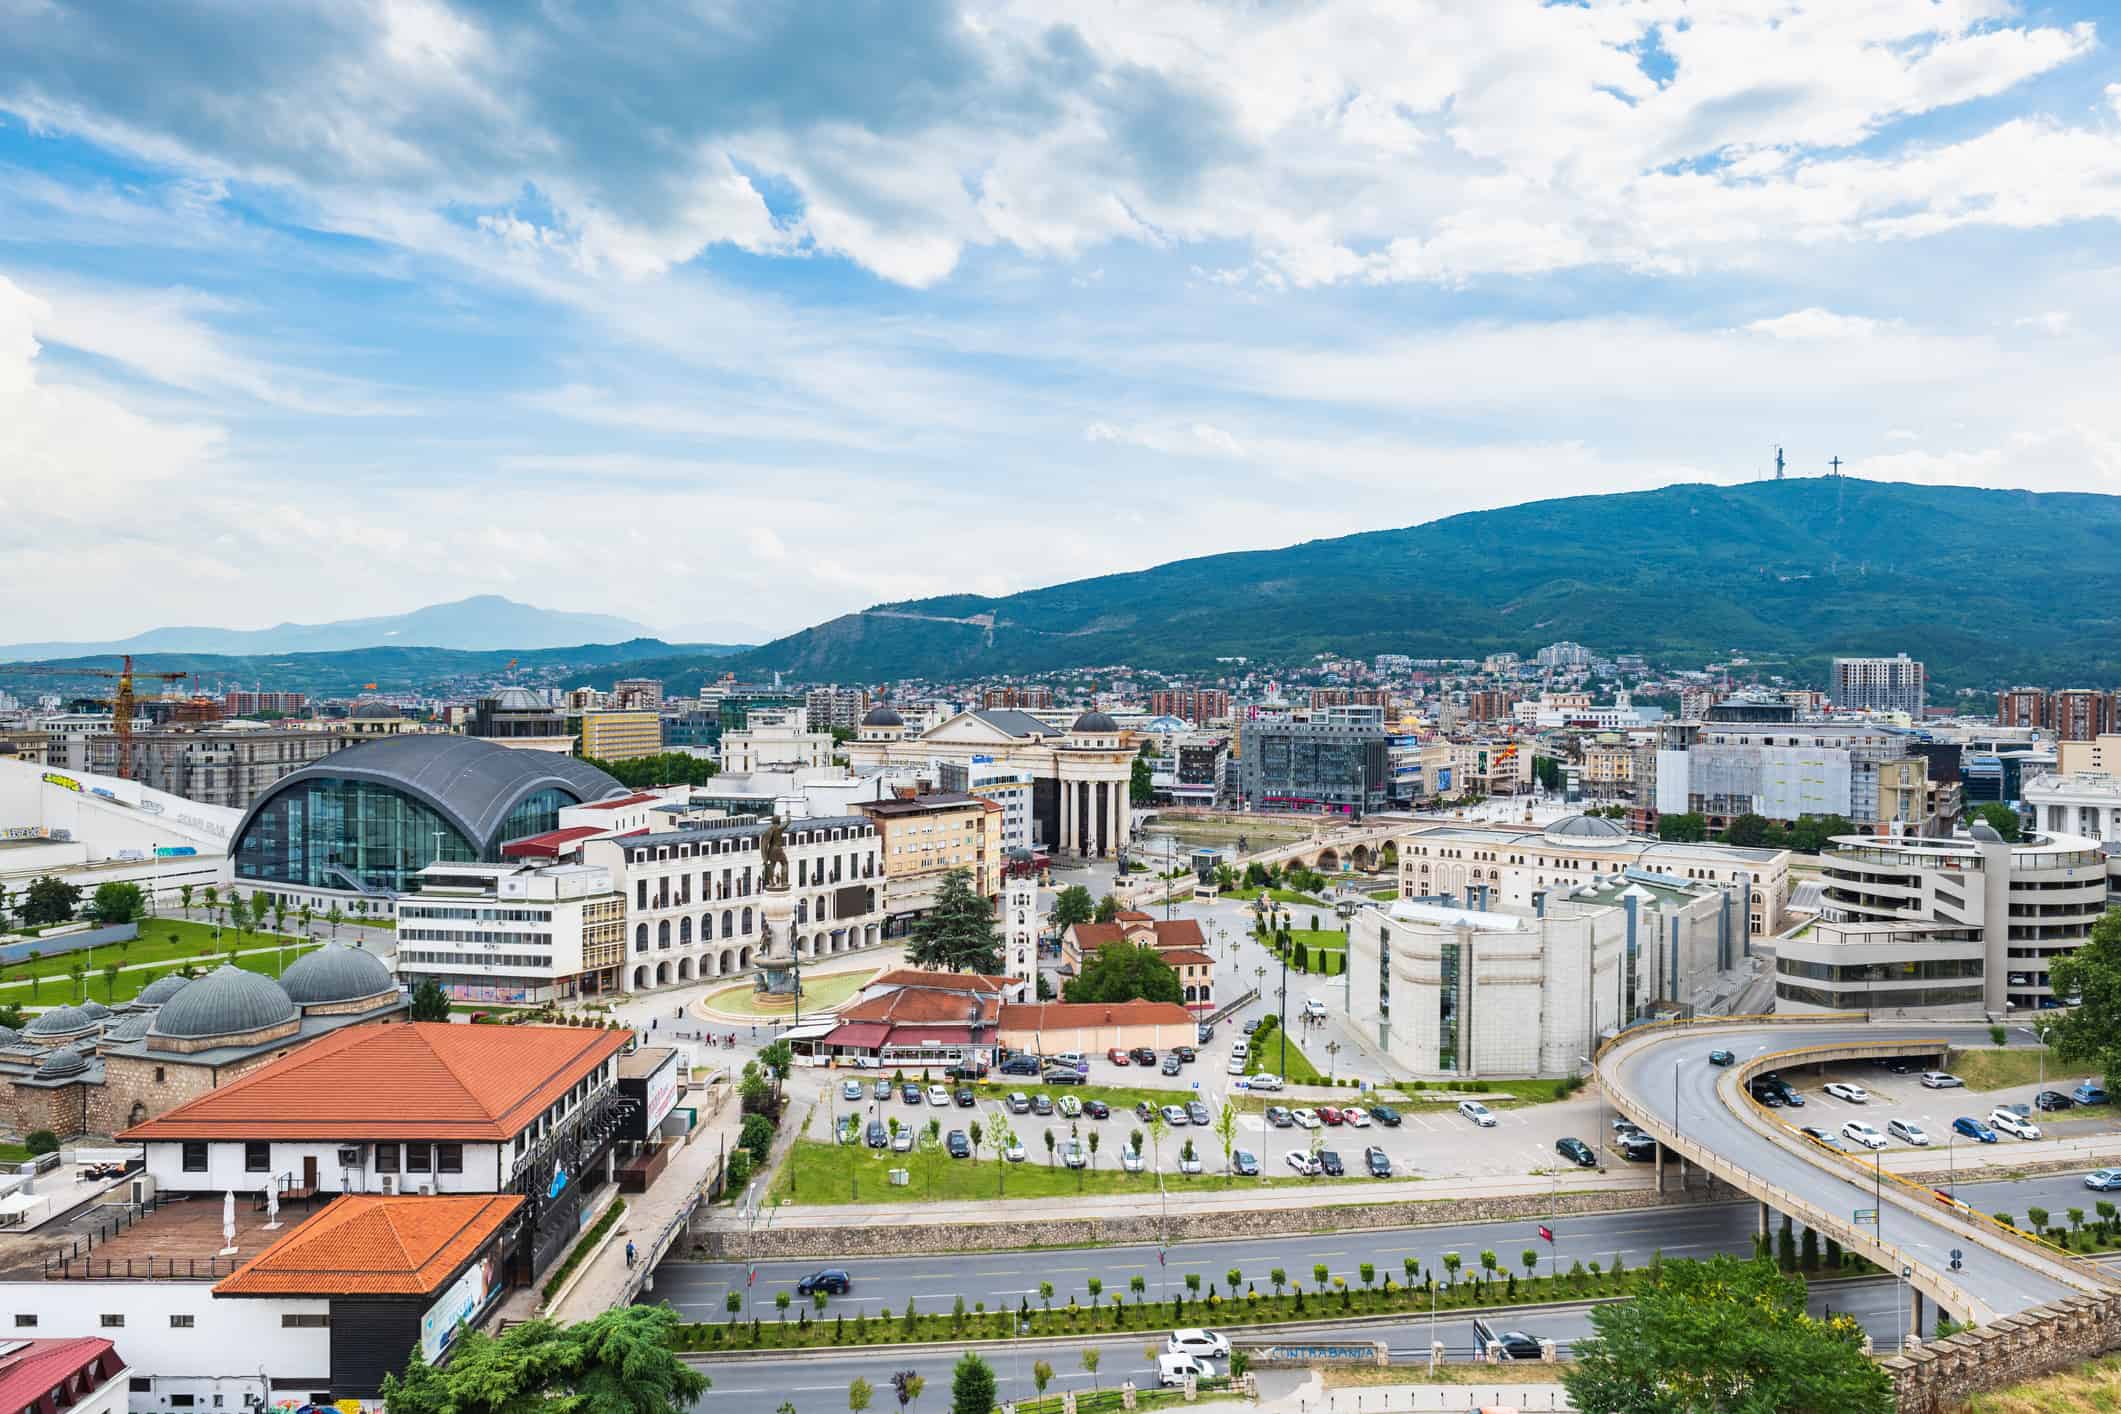 Paesaggio urbano di Skopje, capitale della Macedonia del Nord, Europa.